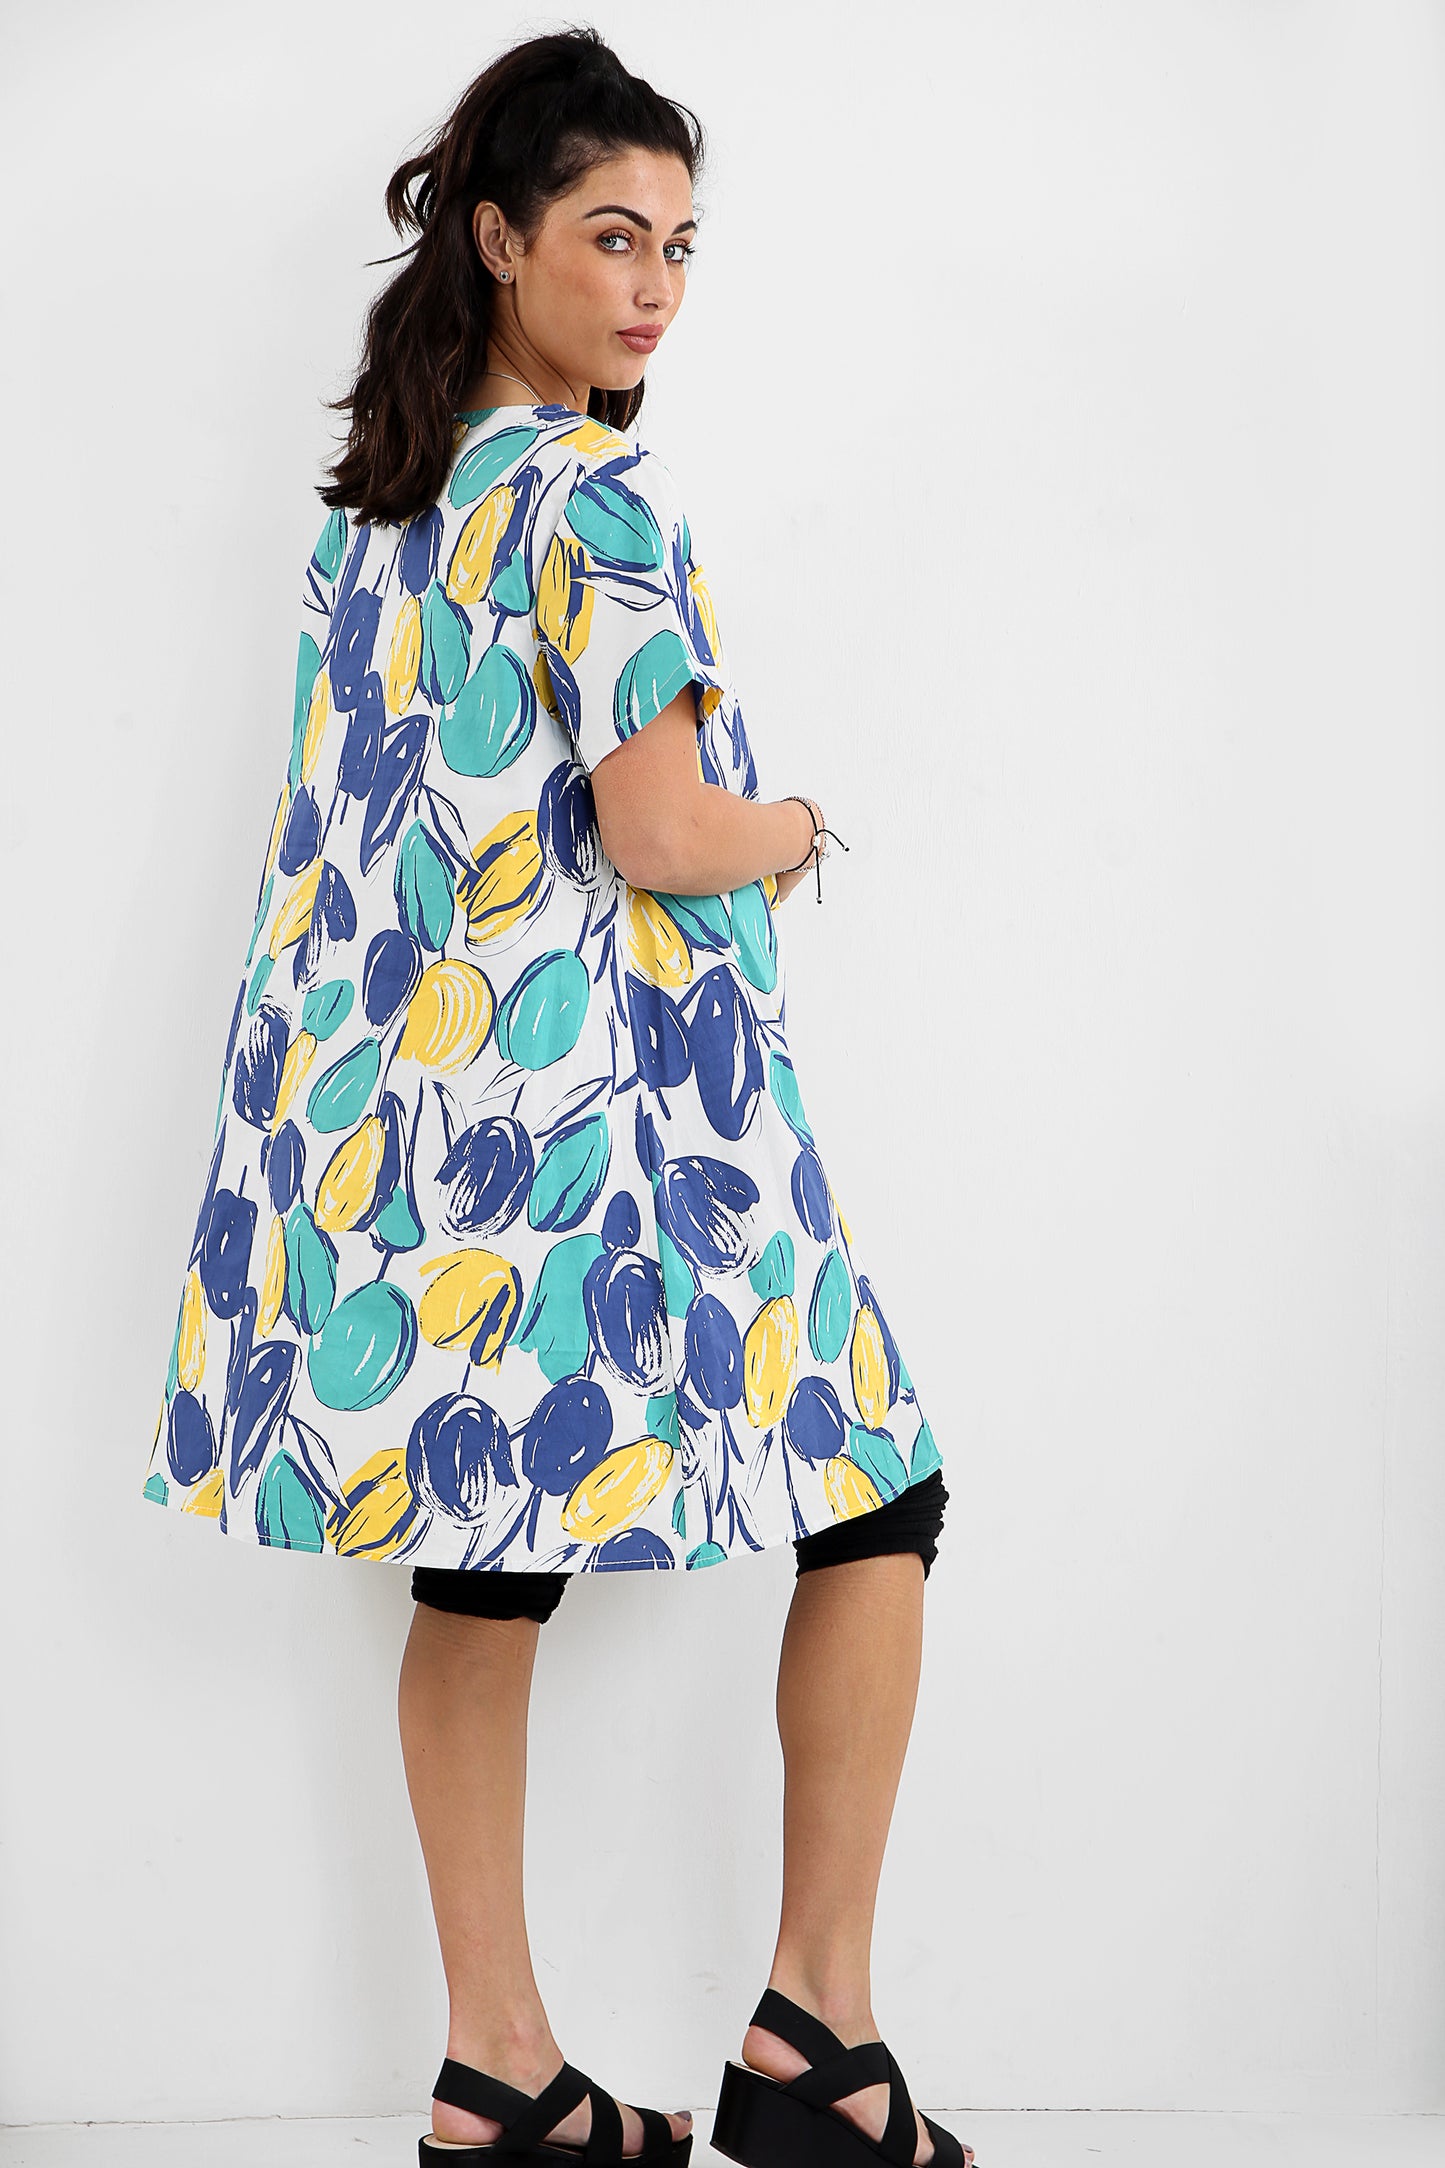 Vestido túnica colorido com inspiração em frutas com casca